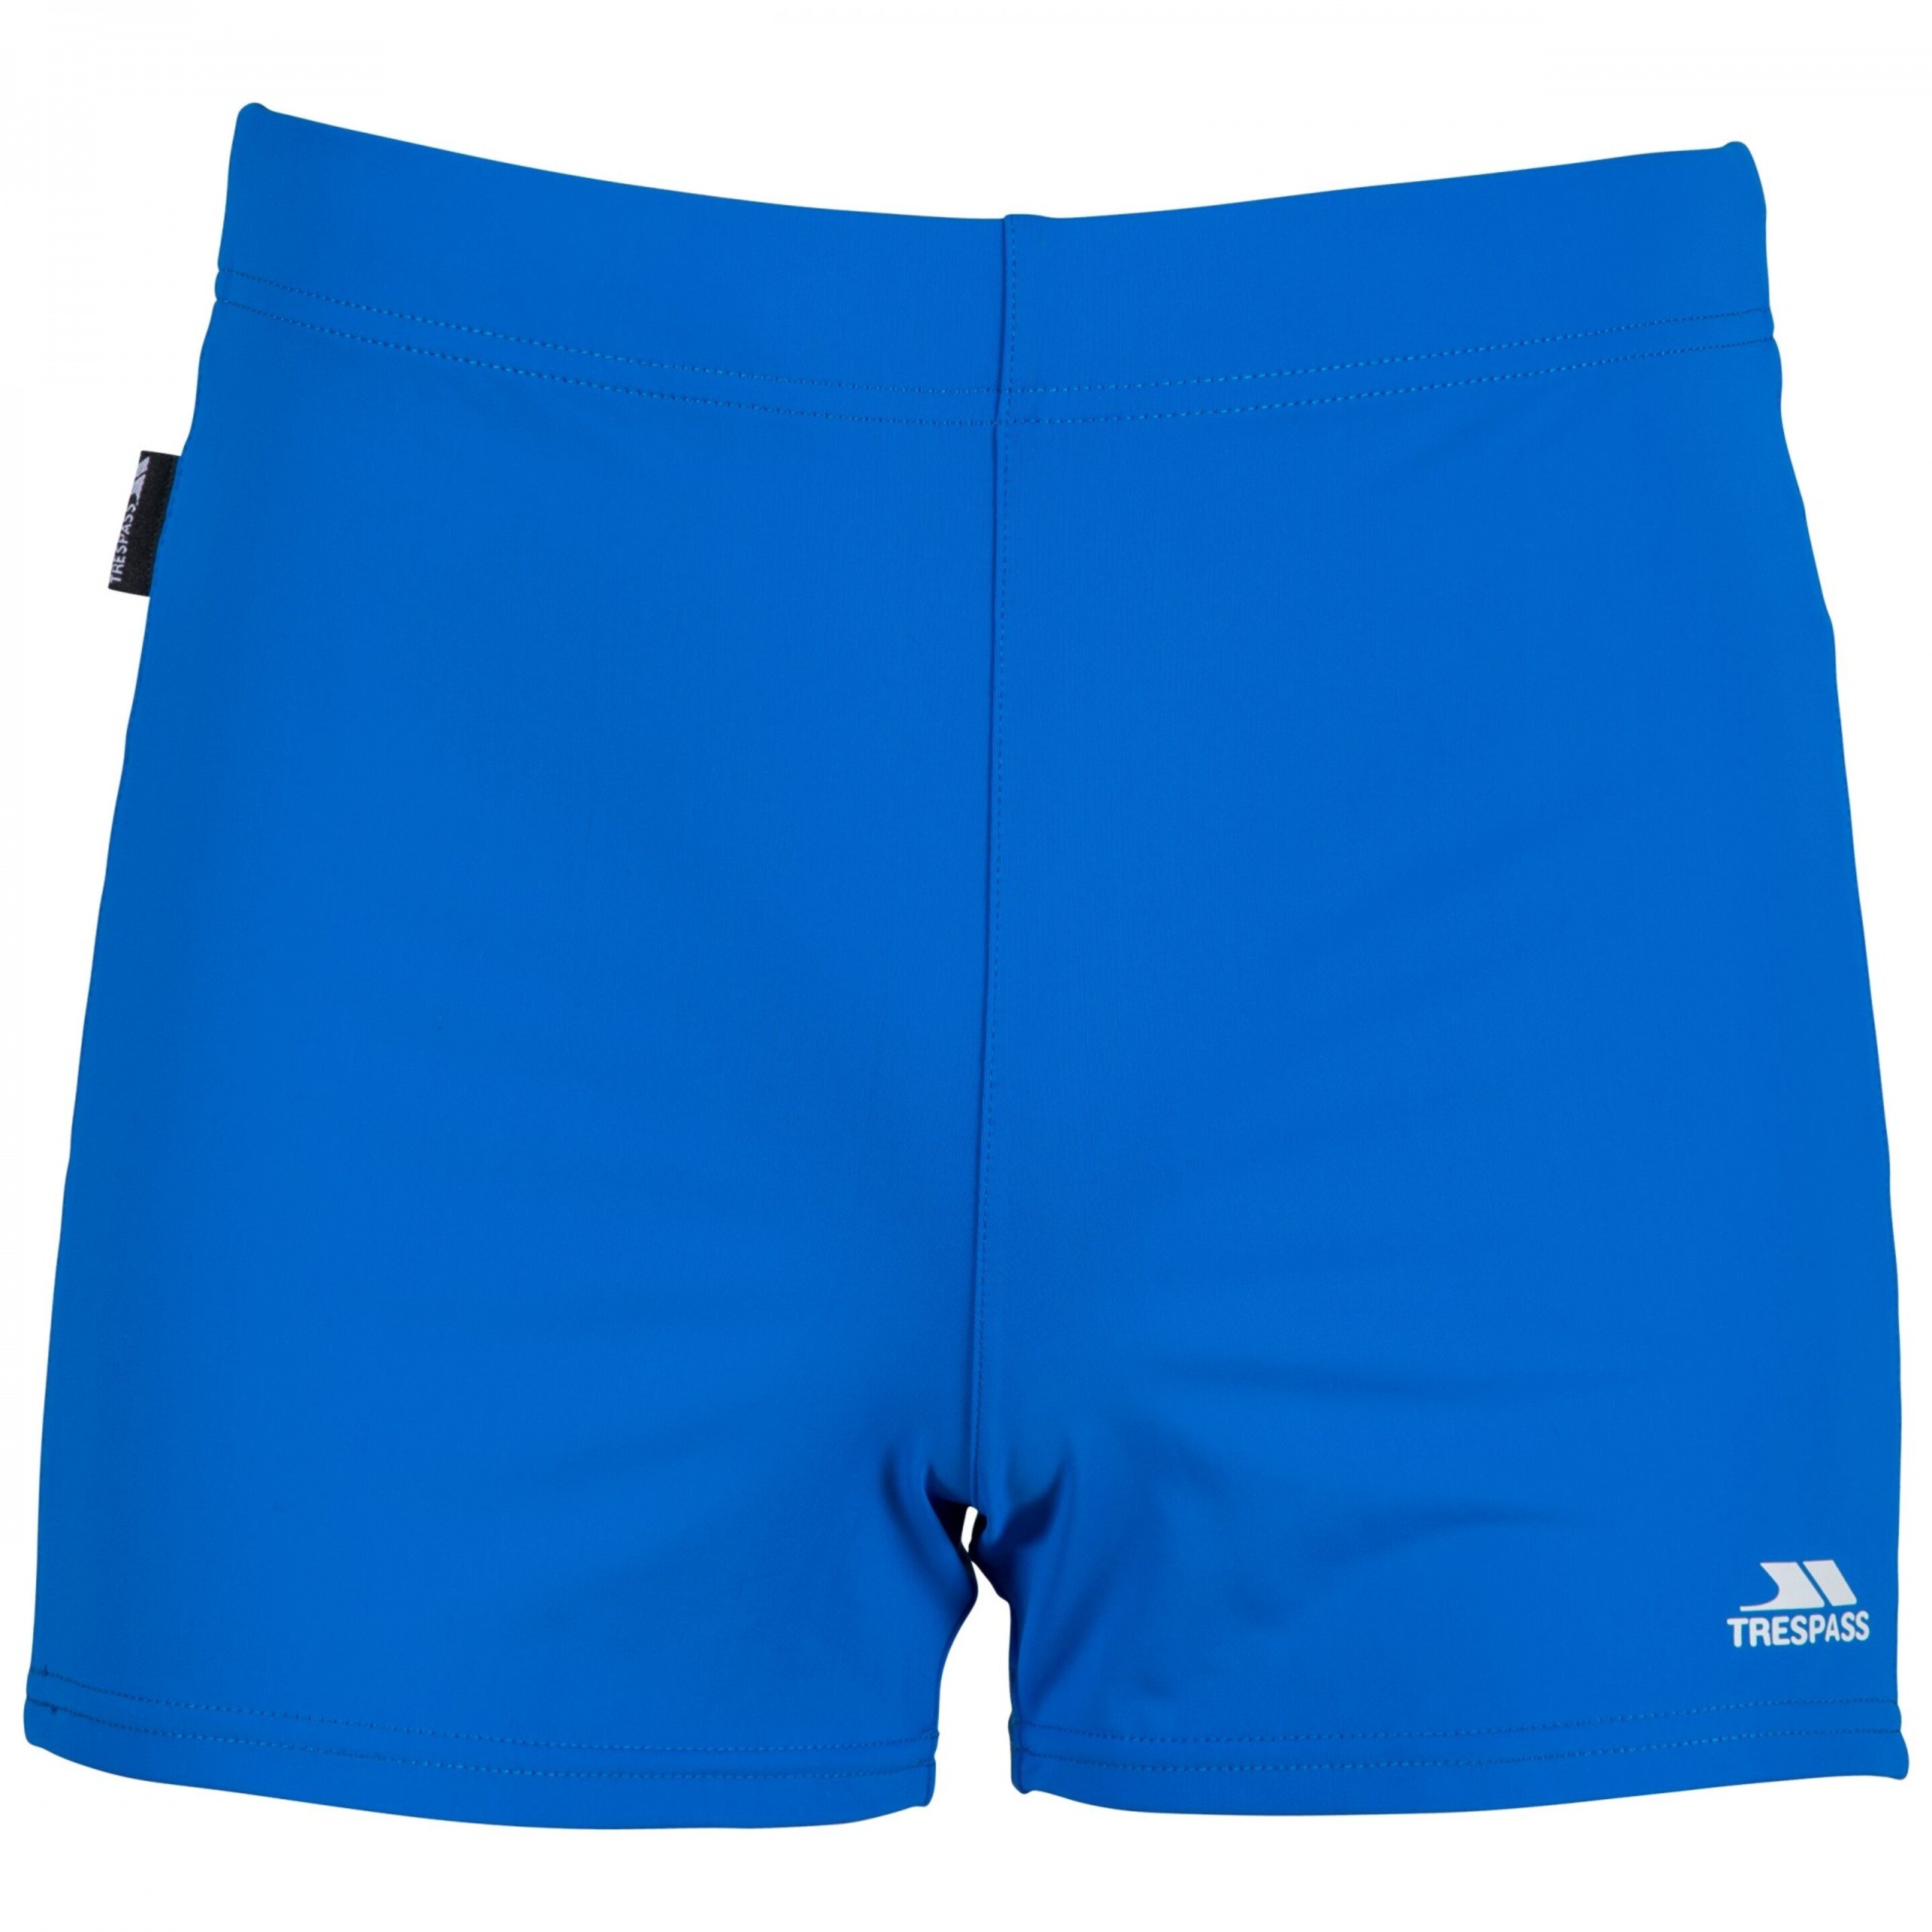 Trespass - Pantalones Cortos / Bañador Panel En Contraste Modelo Exerted Hombre Caballero (Azul